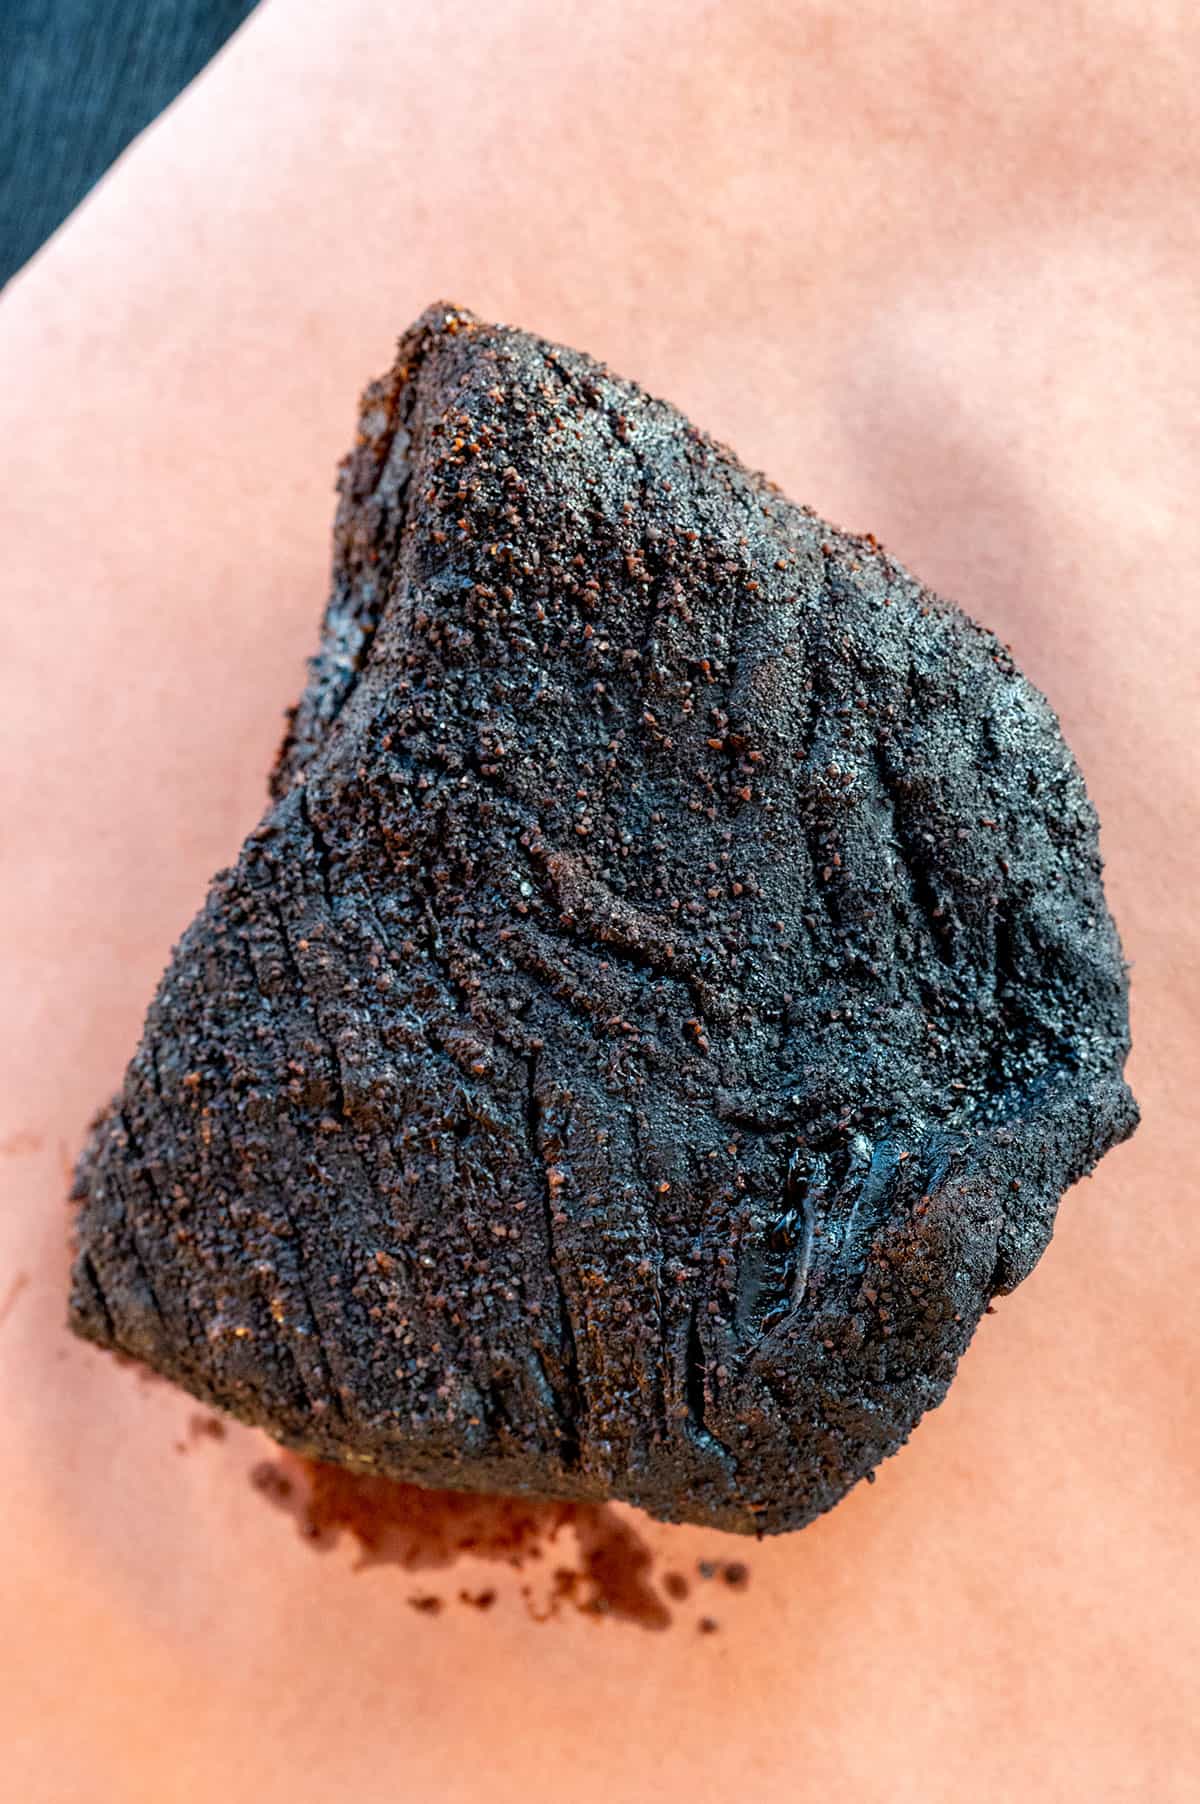 brisket with dark bark.